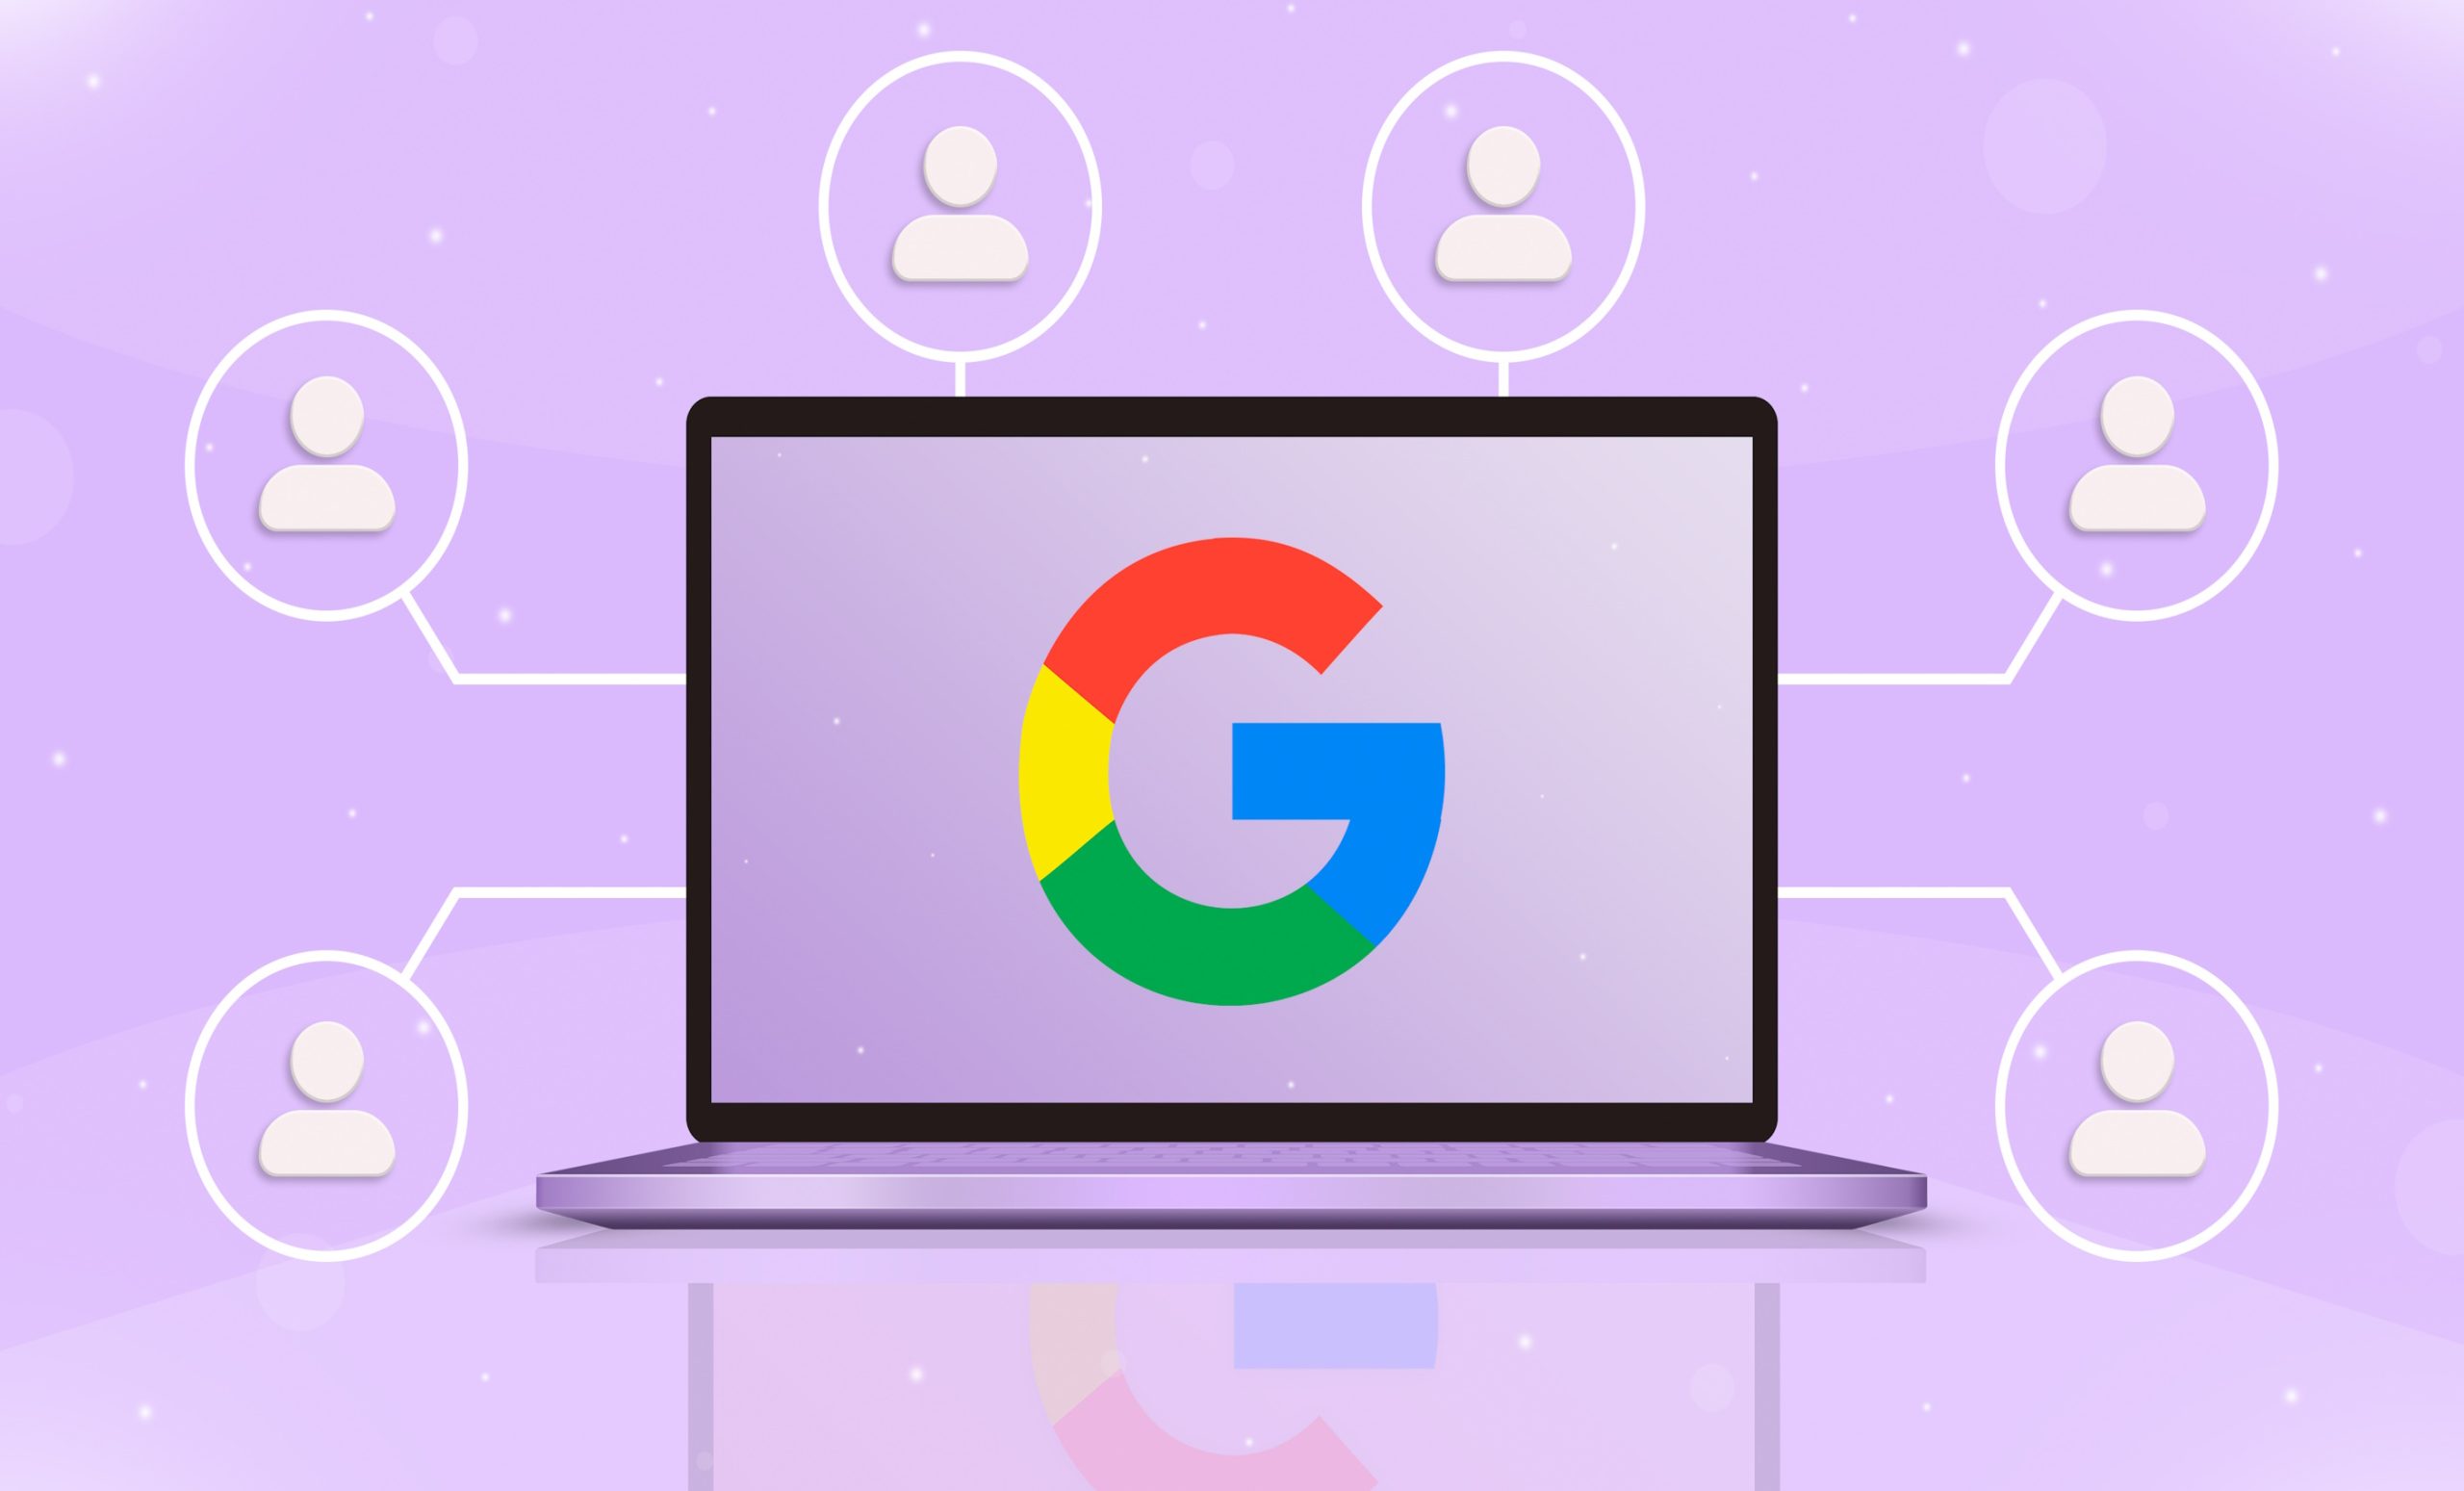 Cómo hacer para que Google Chrome consuma menos memoria RAM